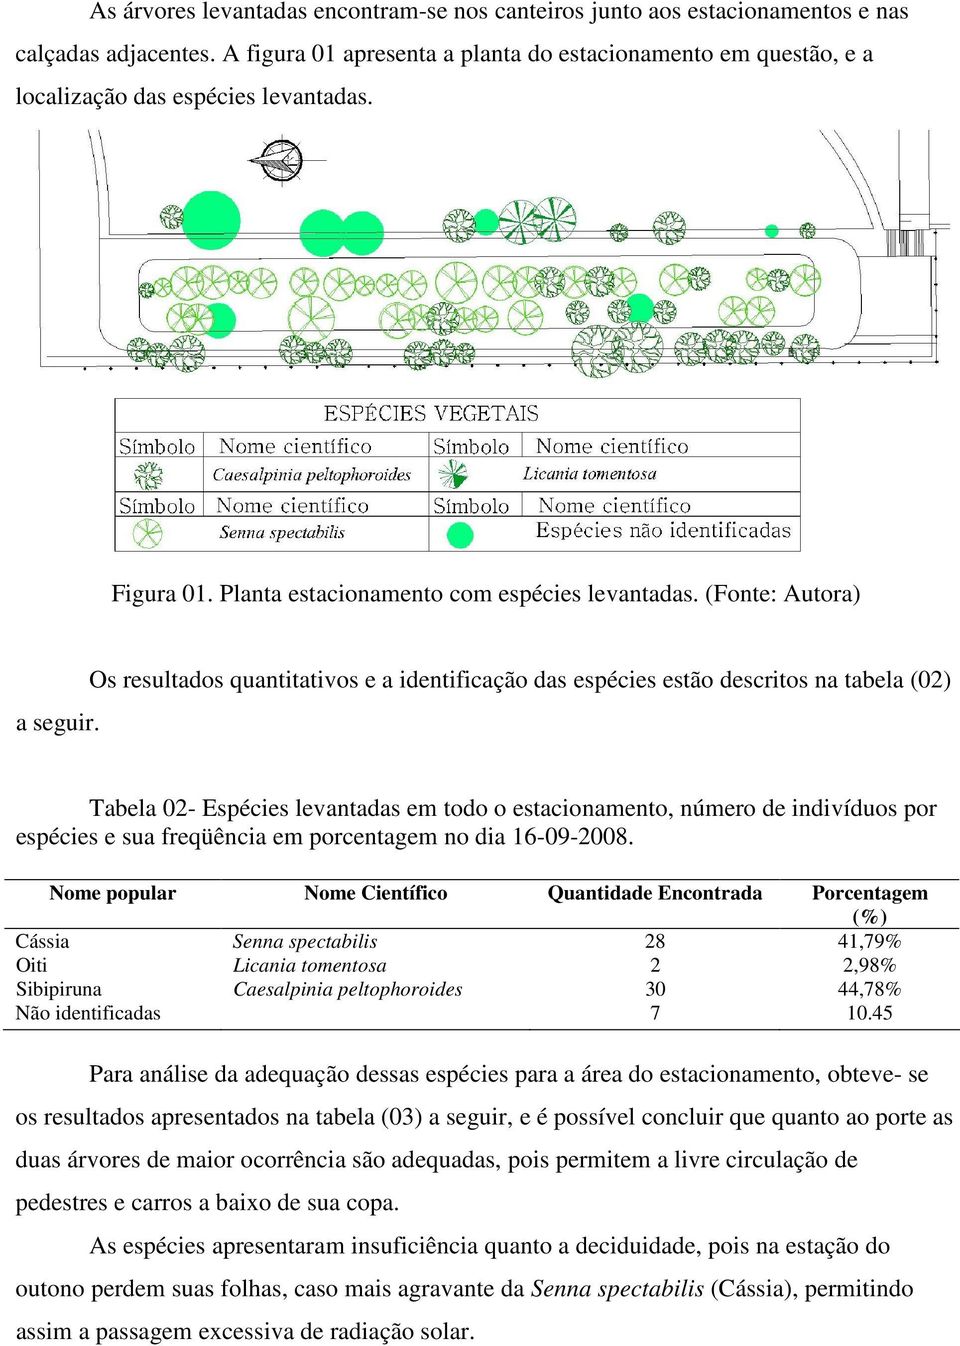 Os resultados quantitativos e a identificação das espécies estão descritos na tabela (02) Tabela 02- Espécies levantadas em todo o estacionamento, número de indivíduos por espécies e sua freqüência